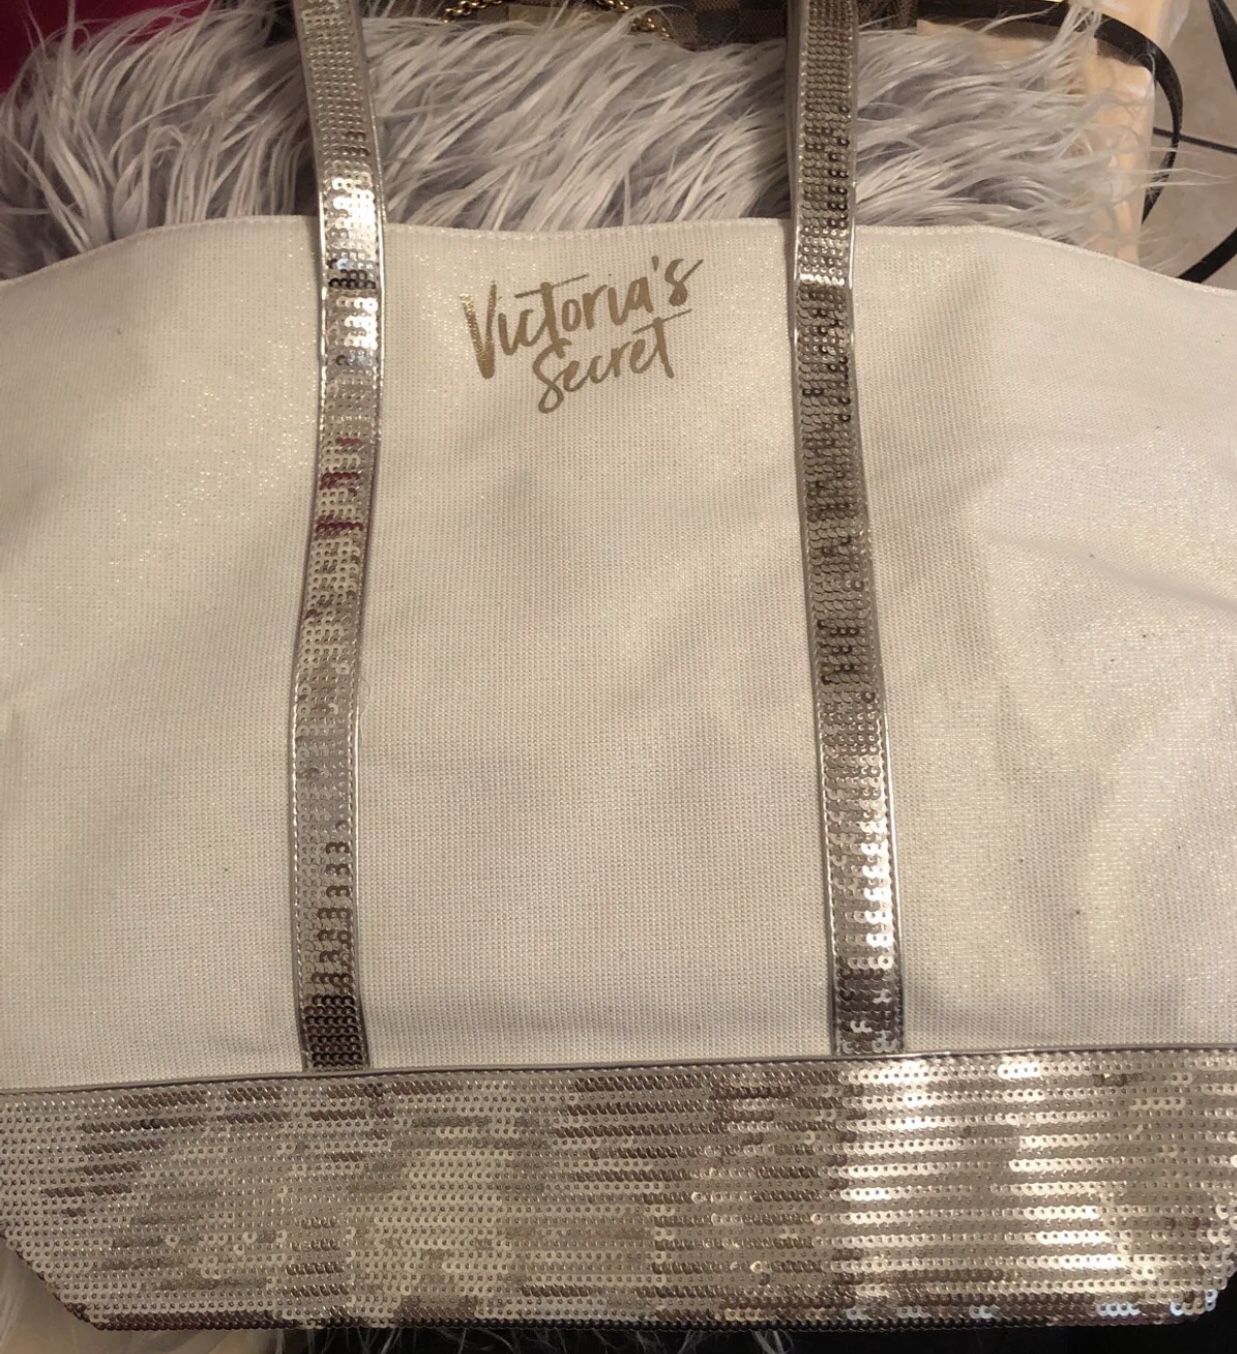 Victoria’s Secret Bag